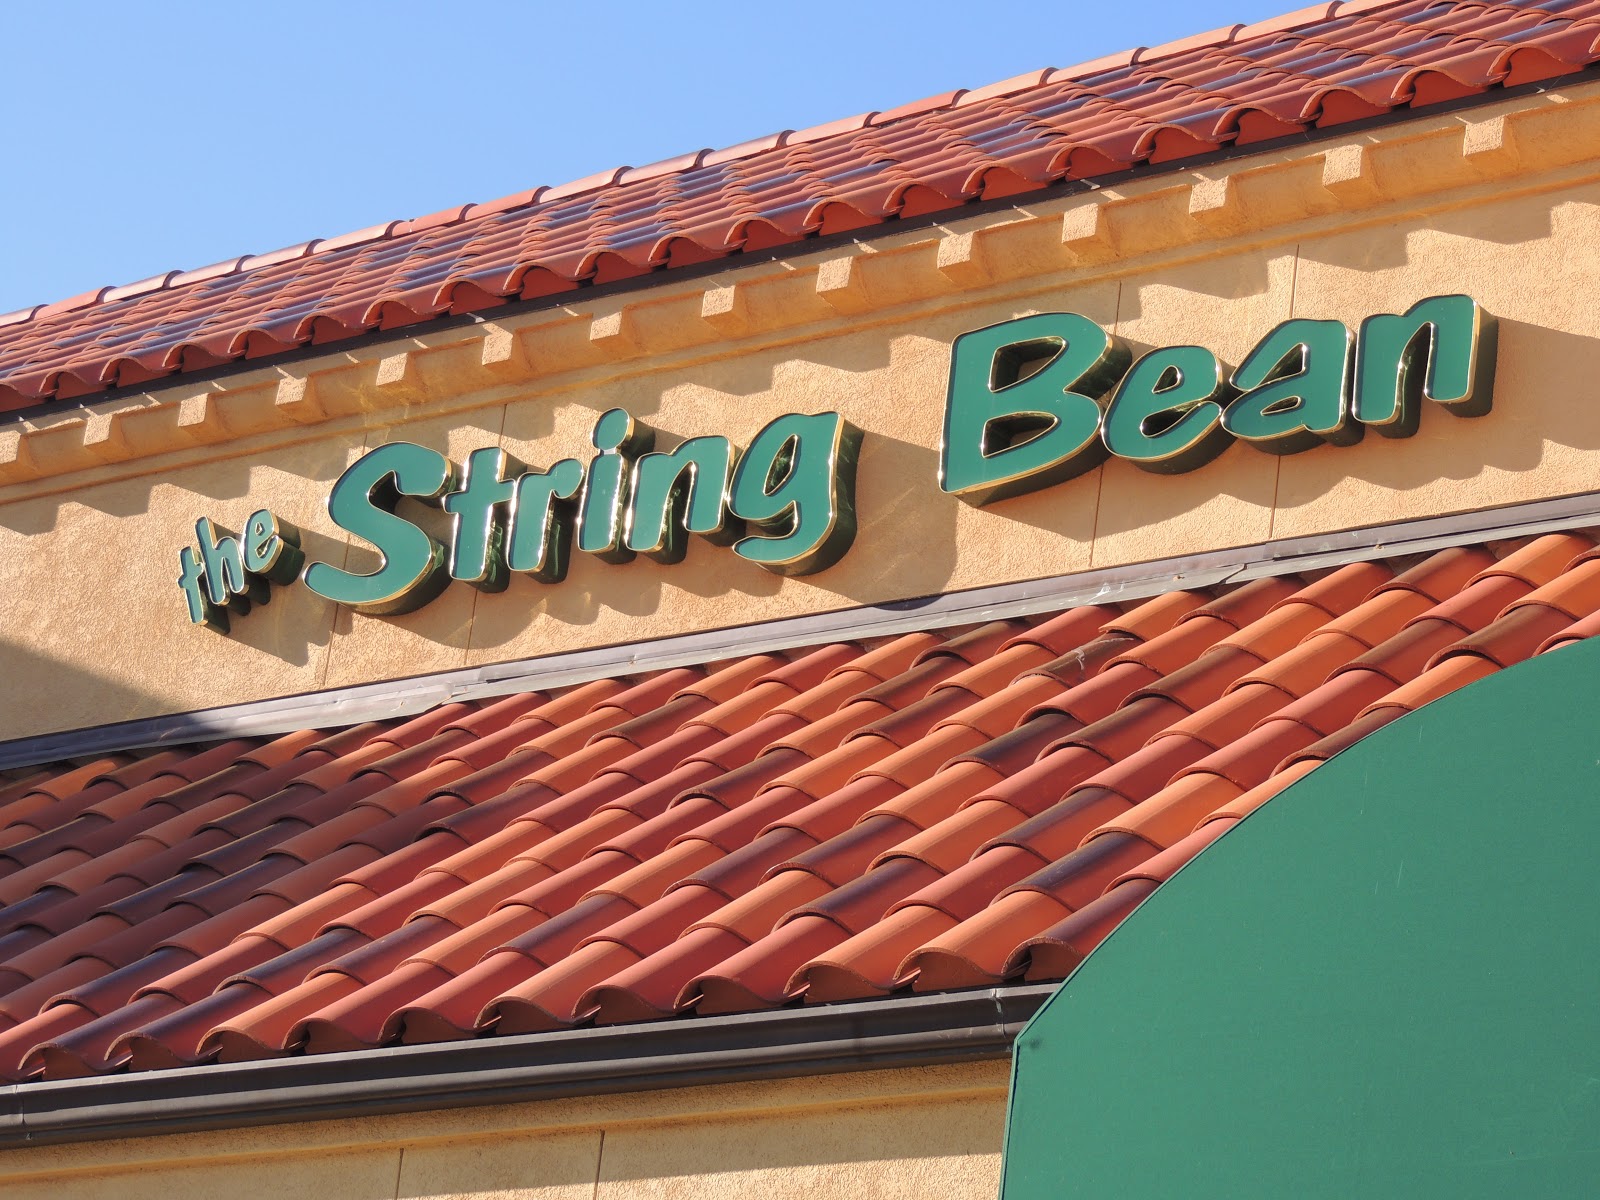 The String Bean Restaurant